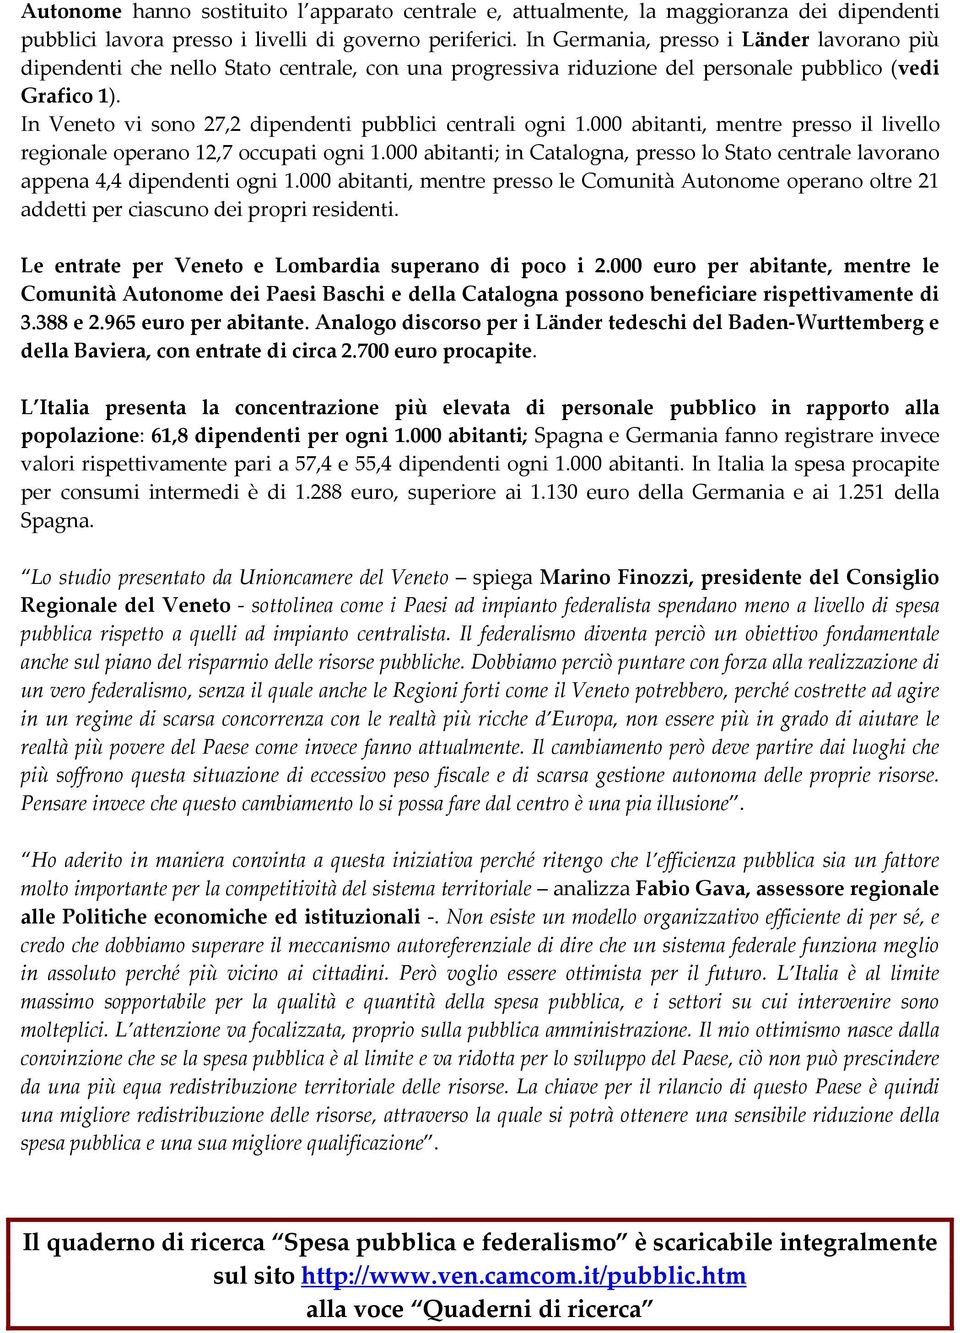 In Veneto vi sono 27,2 dipendenti pubblici centrali ogni 1.000 abitanti, mentre presso il livello regionale operano 12,7 occupati ogni 1.